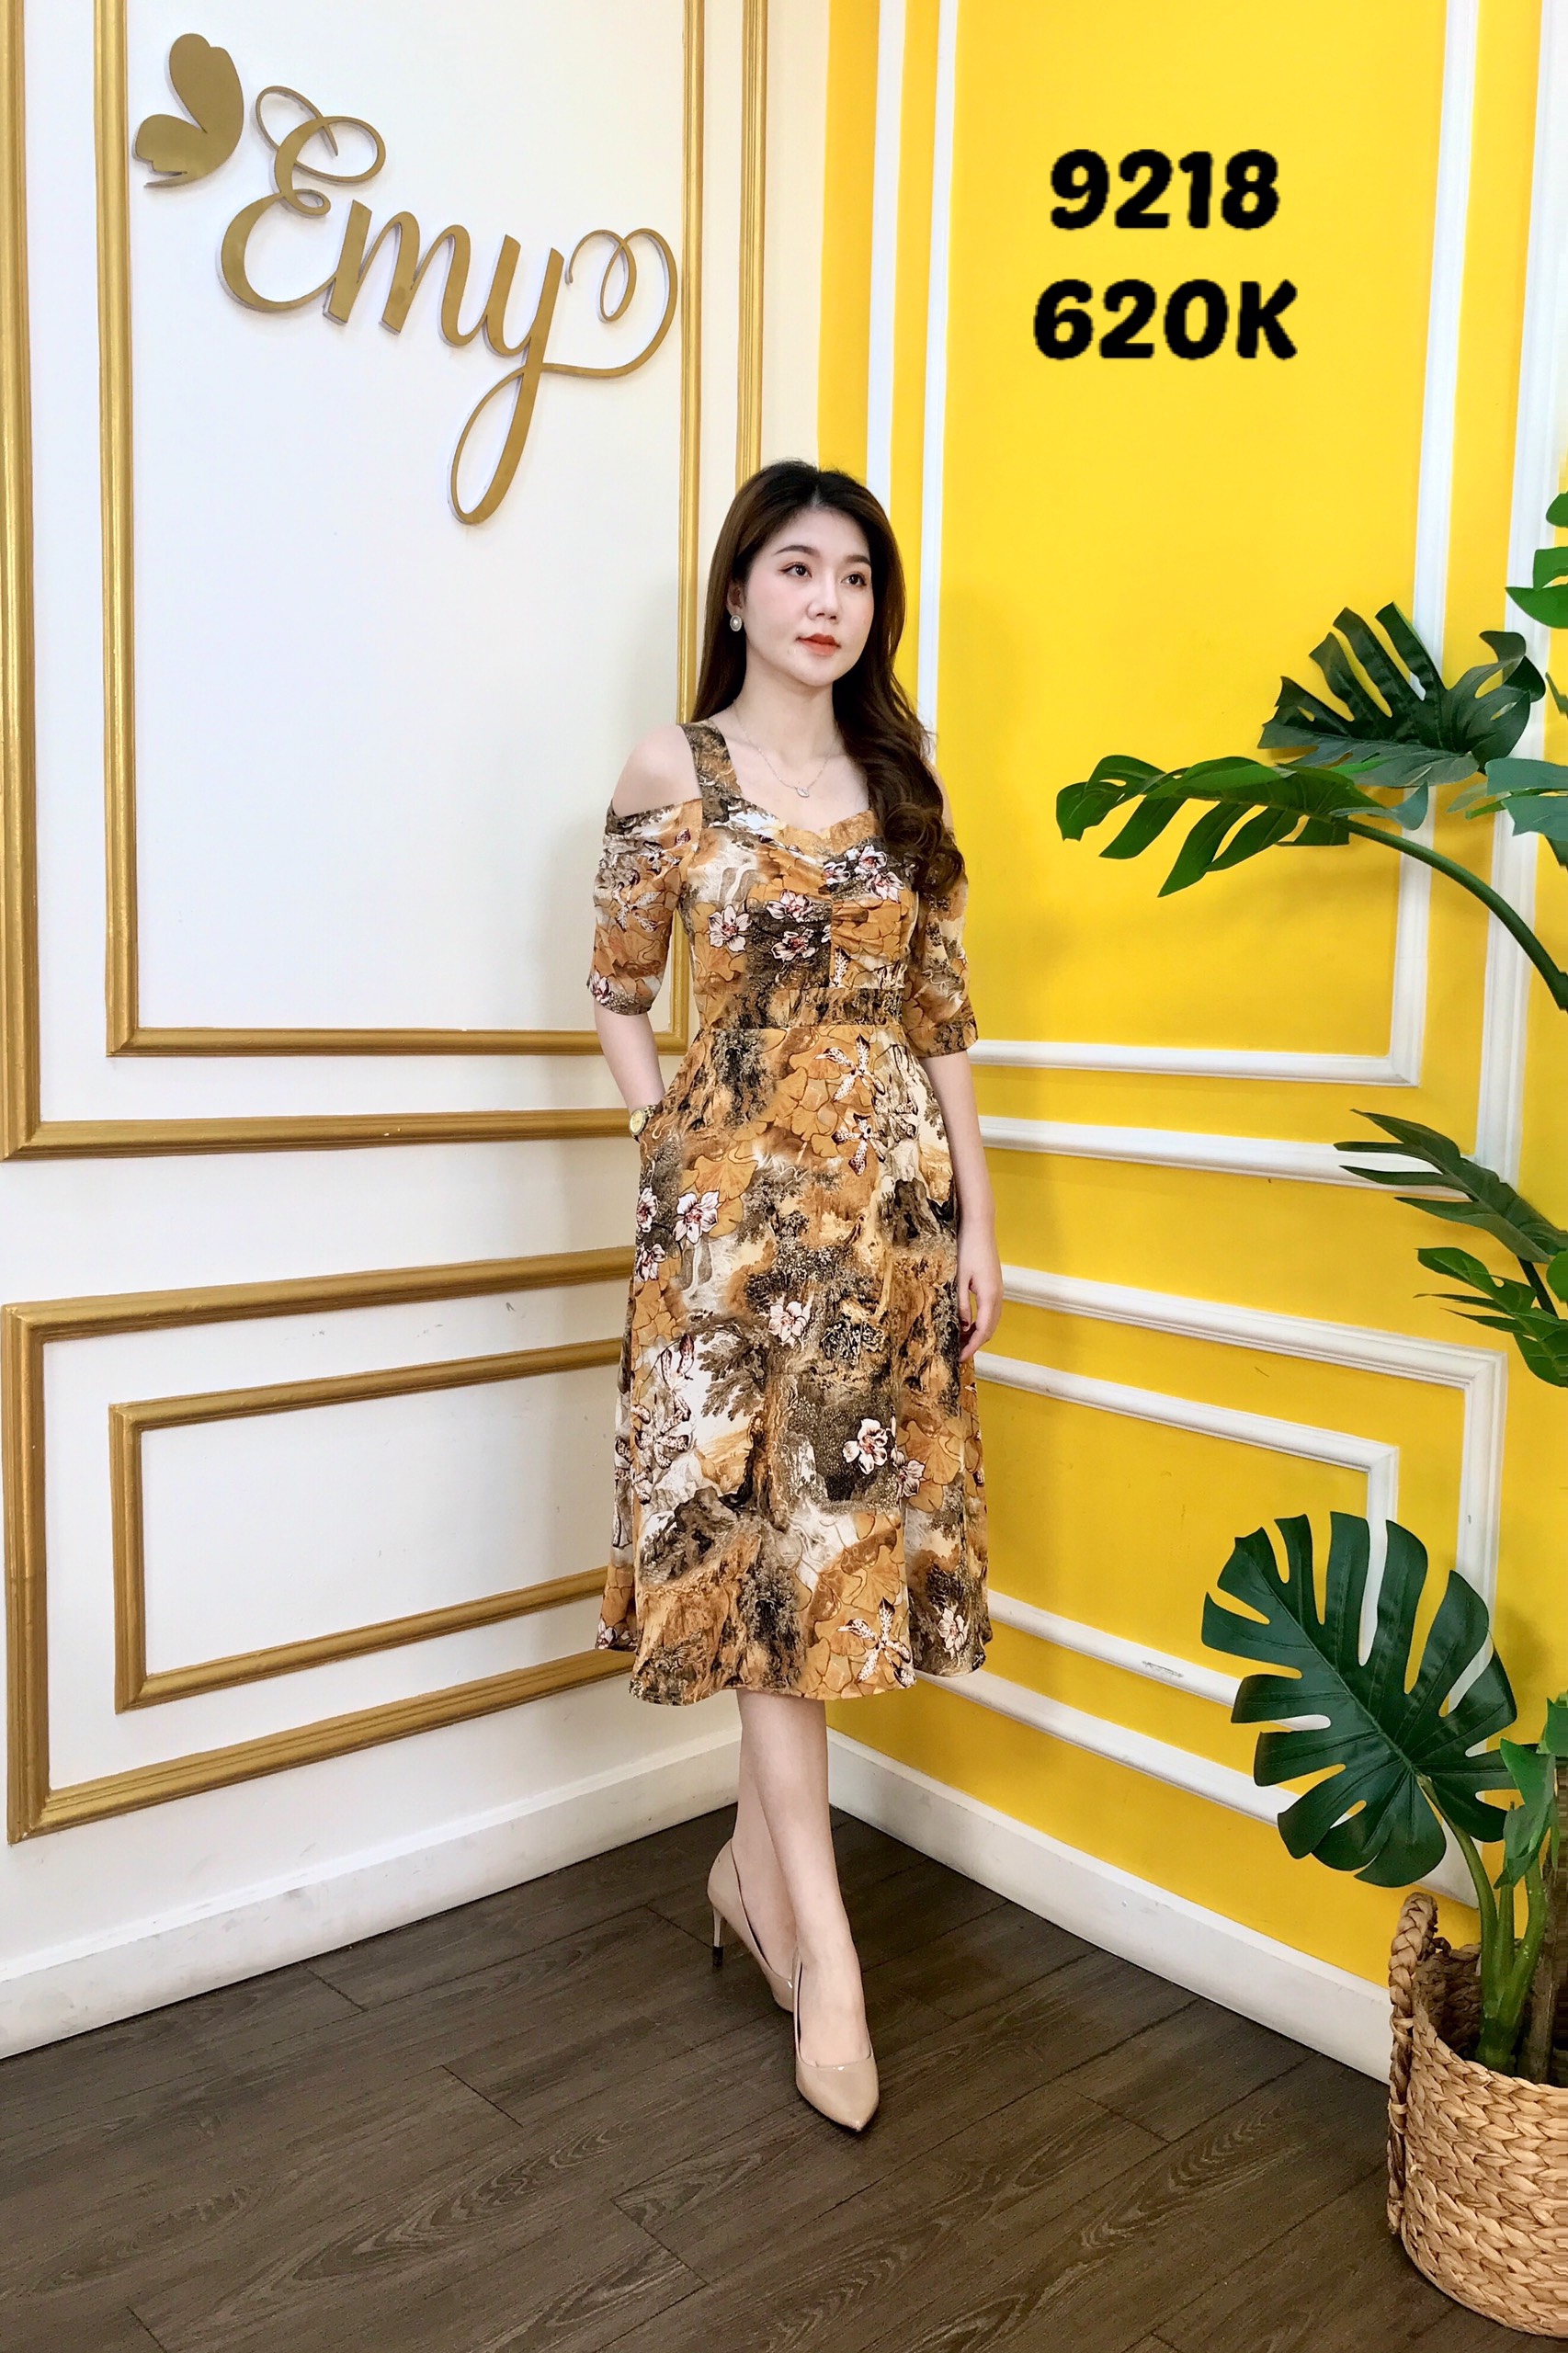 Váy Emy ra mắt cửa hàng luxury dành cho các nàng sành điệu tại Sài Gòn